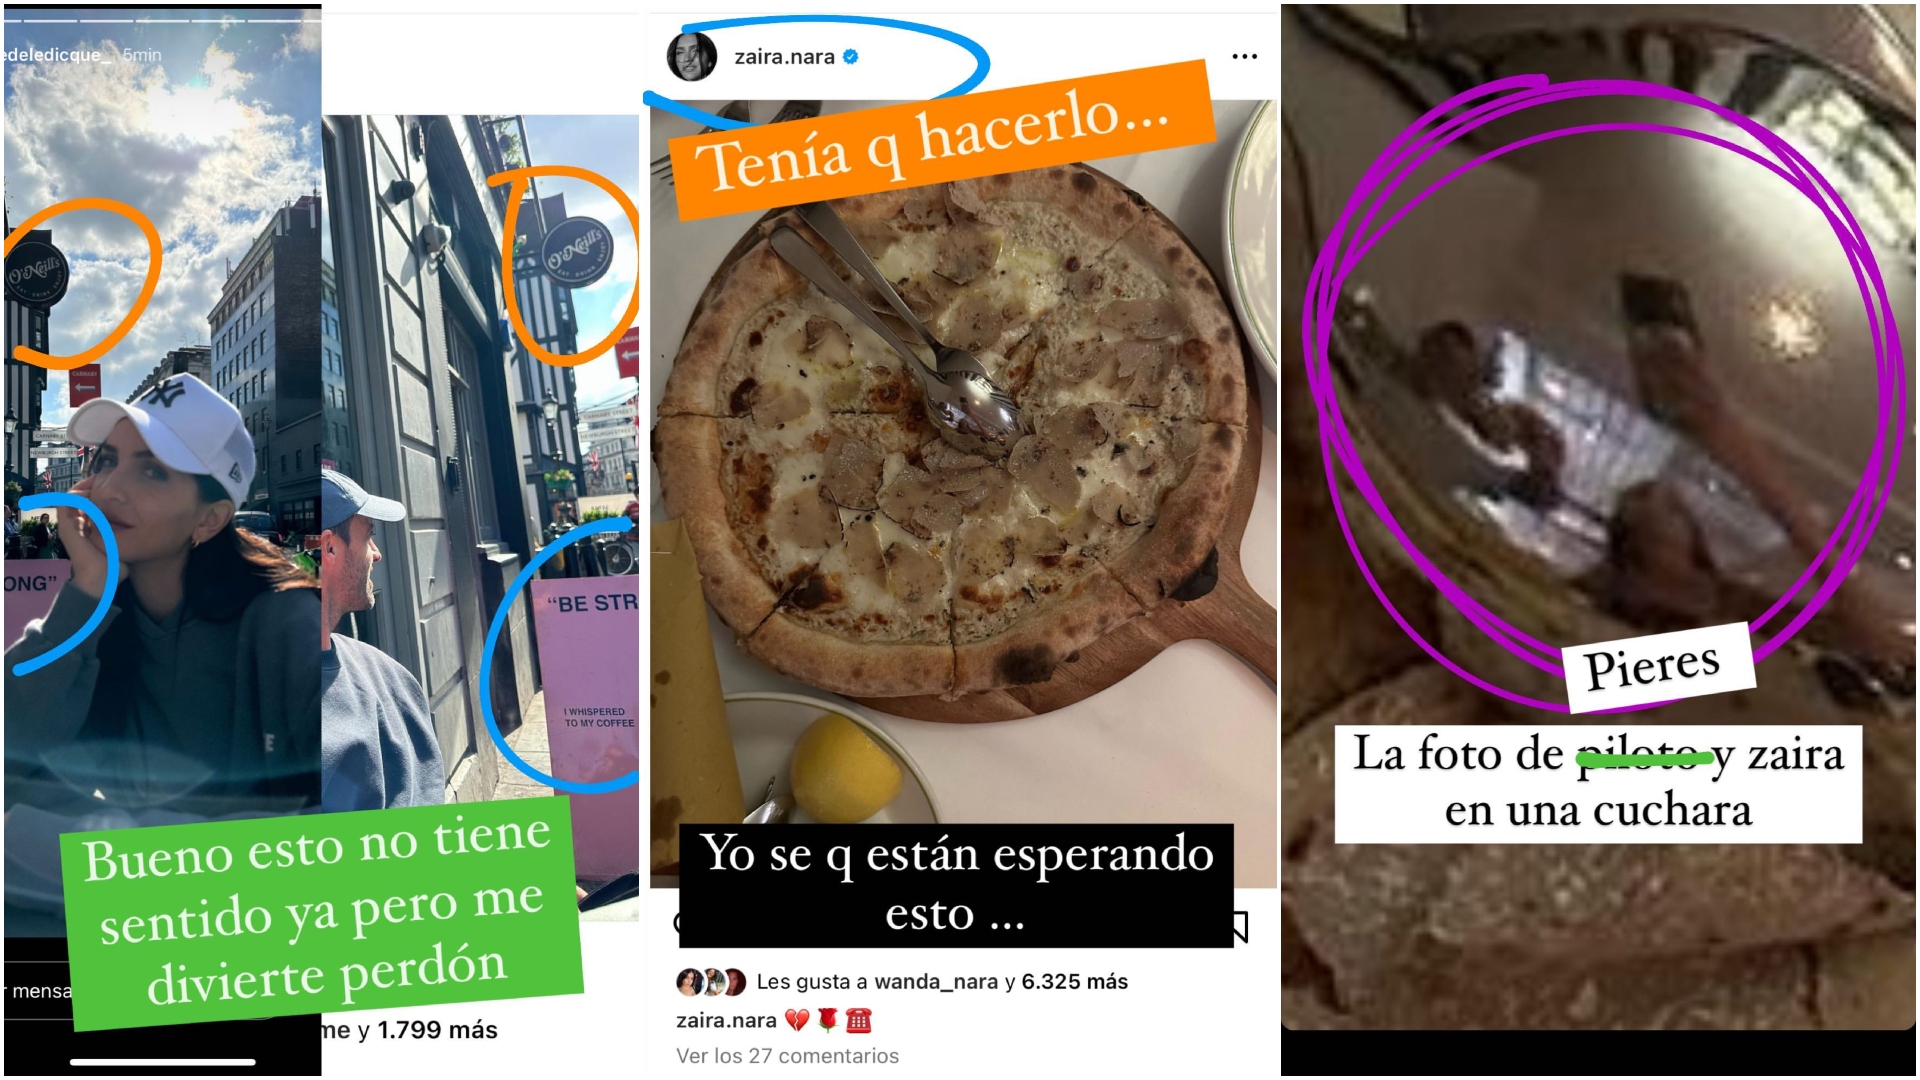 El reflejo de Zaira Nara y Facundo Pieres en las cucharas sobre la pizza  (Instagram)